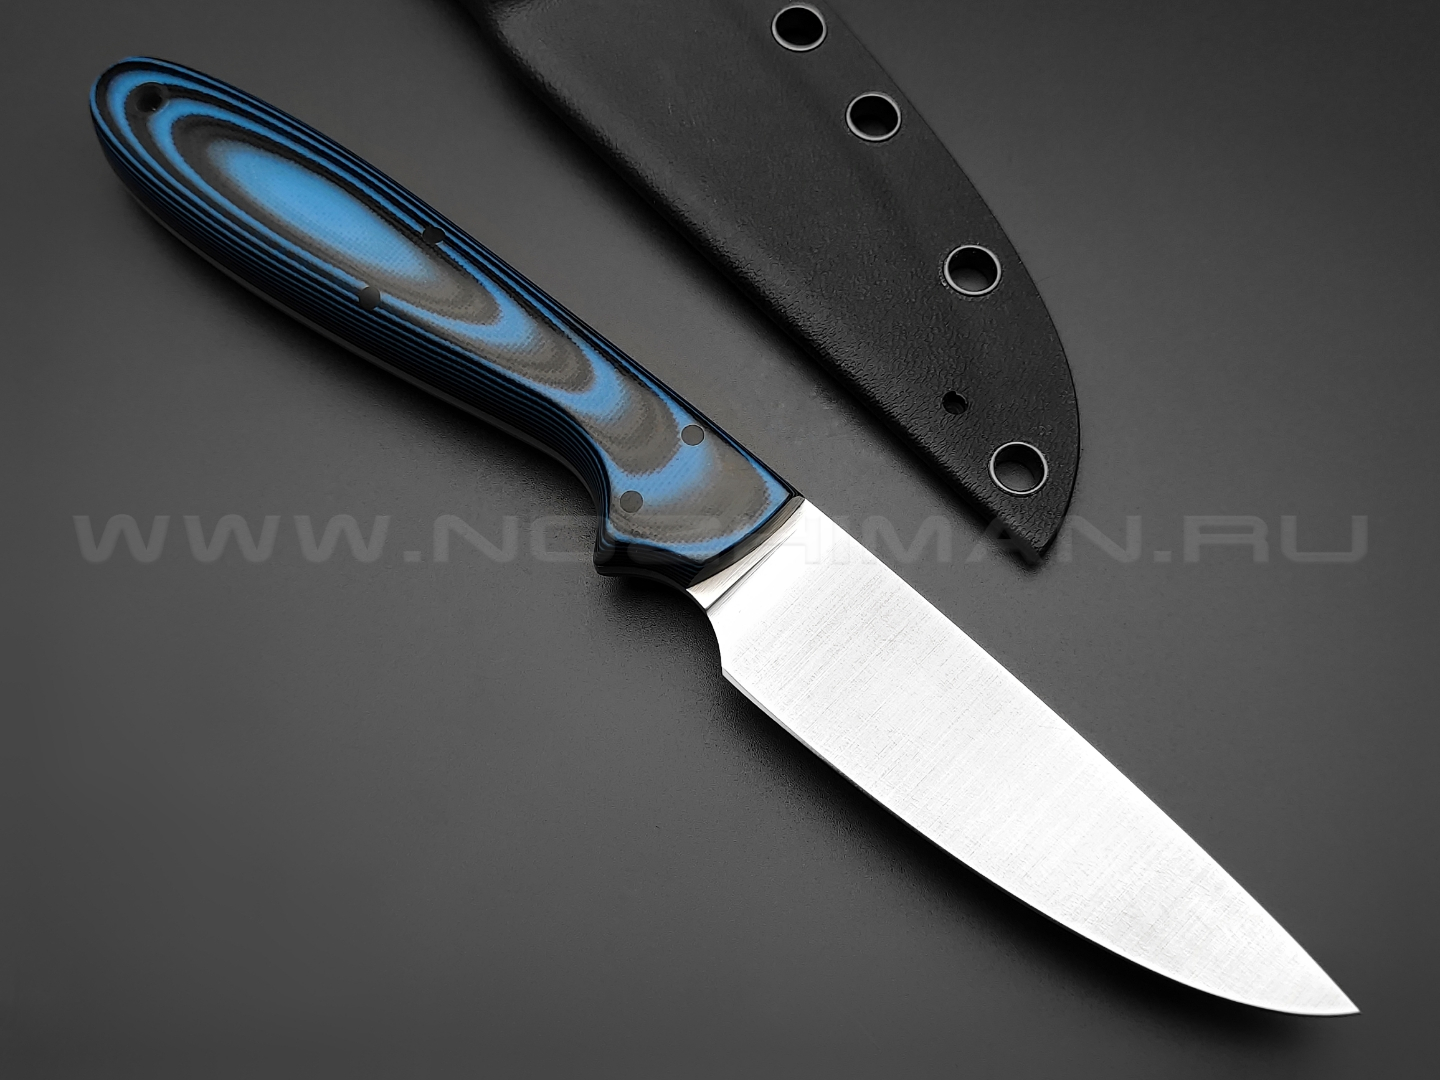 Apus Knives нож Wilson сталь N690, рукоять G10 black & blue